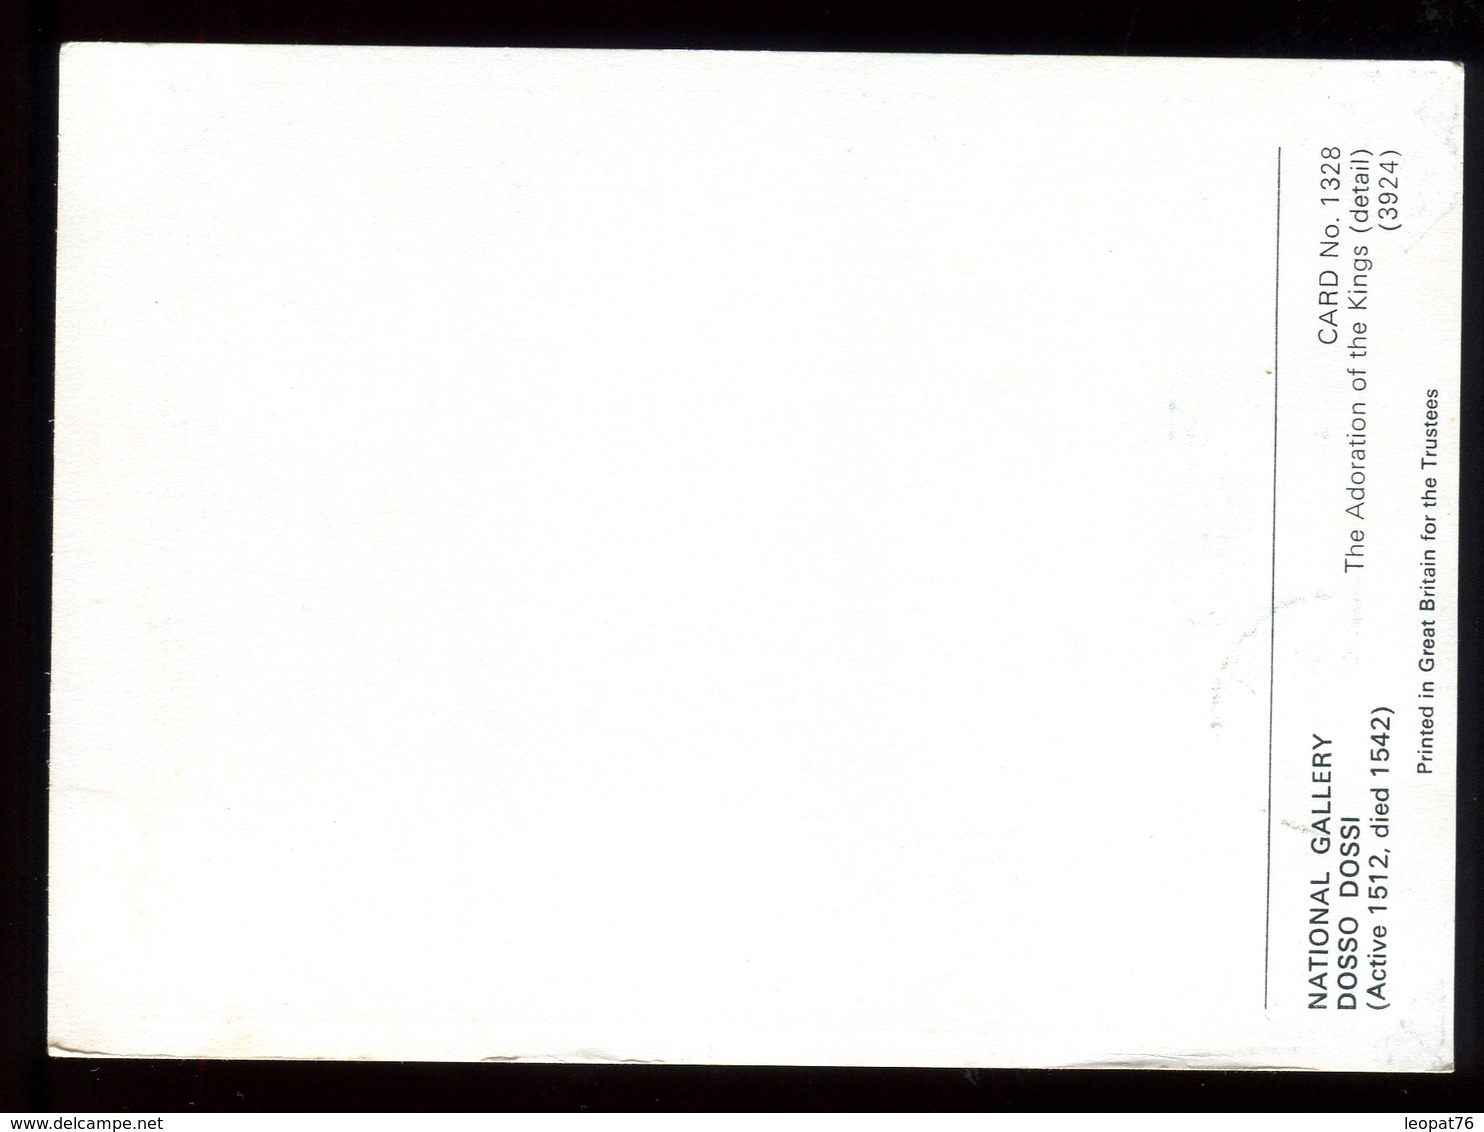 Trinité & Tobago - Carte Maximum 1972 - Oeuvre De Dosso Dossi - N33 - Trinidad & Tobago (1962-...)